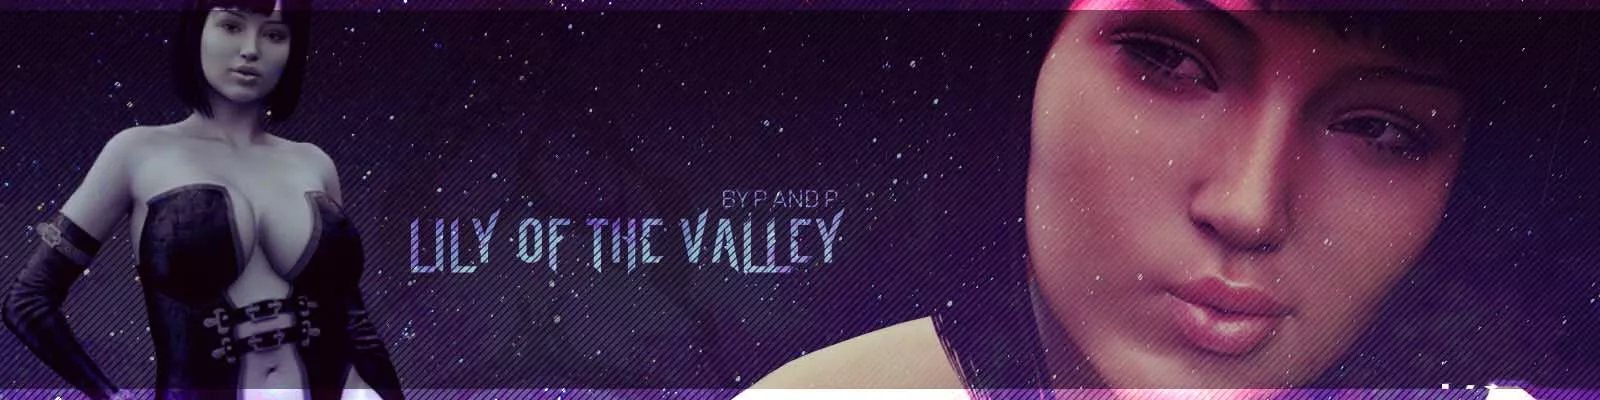 Juego de sexo Lily of the Valley 3d